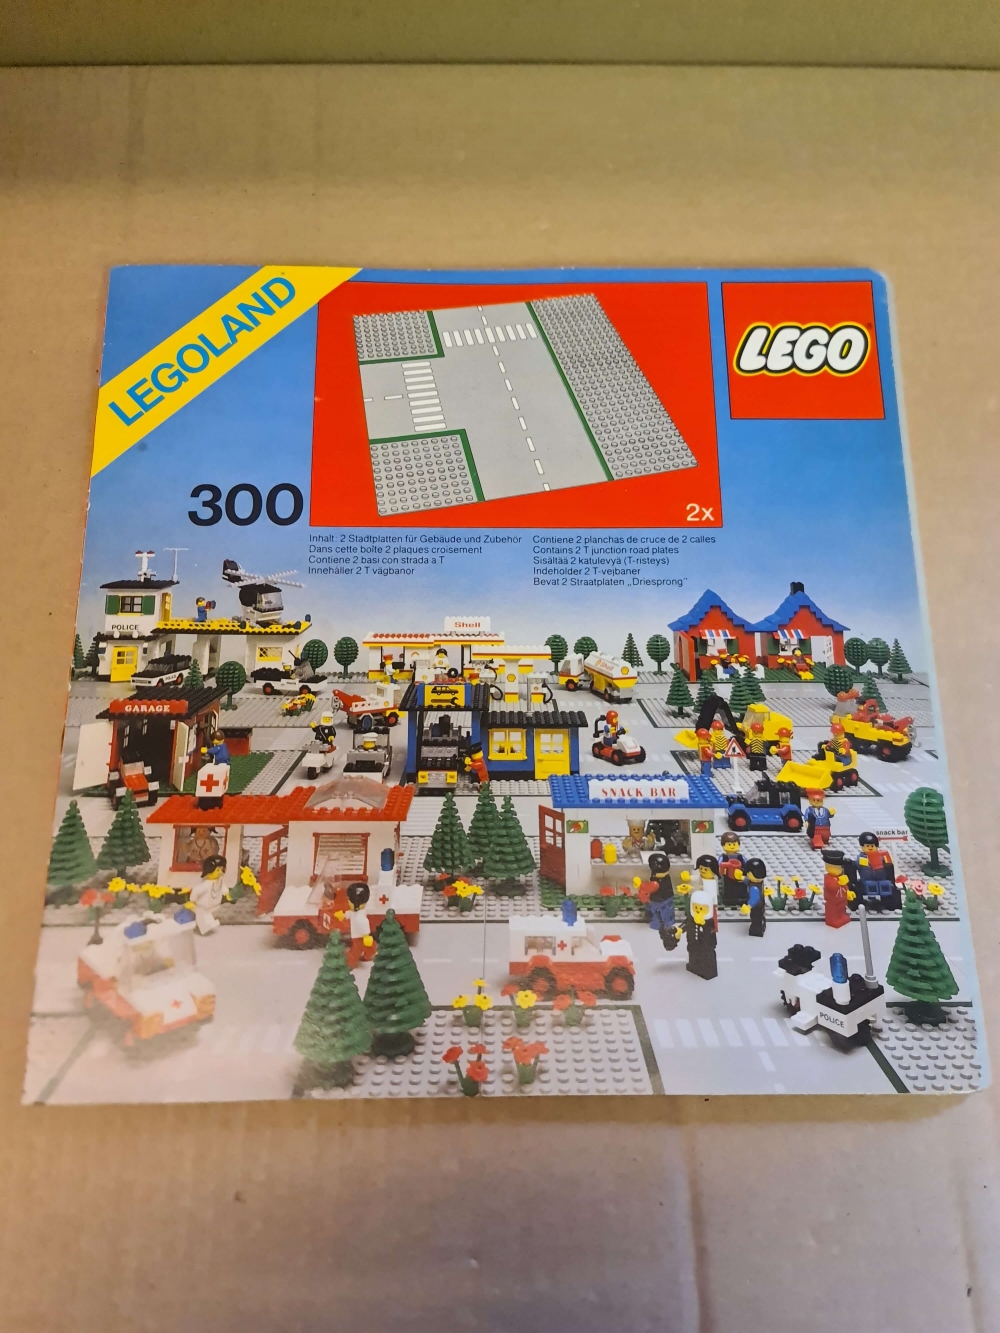 Sett 300 fra Lego Classic Town serien.
Nydelig sett. Ser nesten nytt ut.
Med omslag